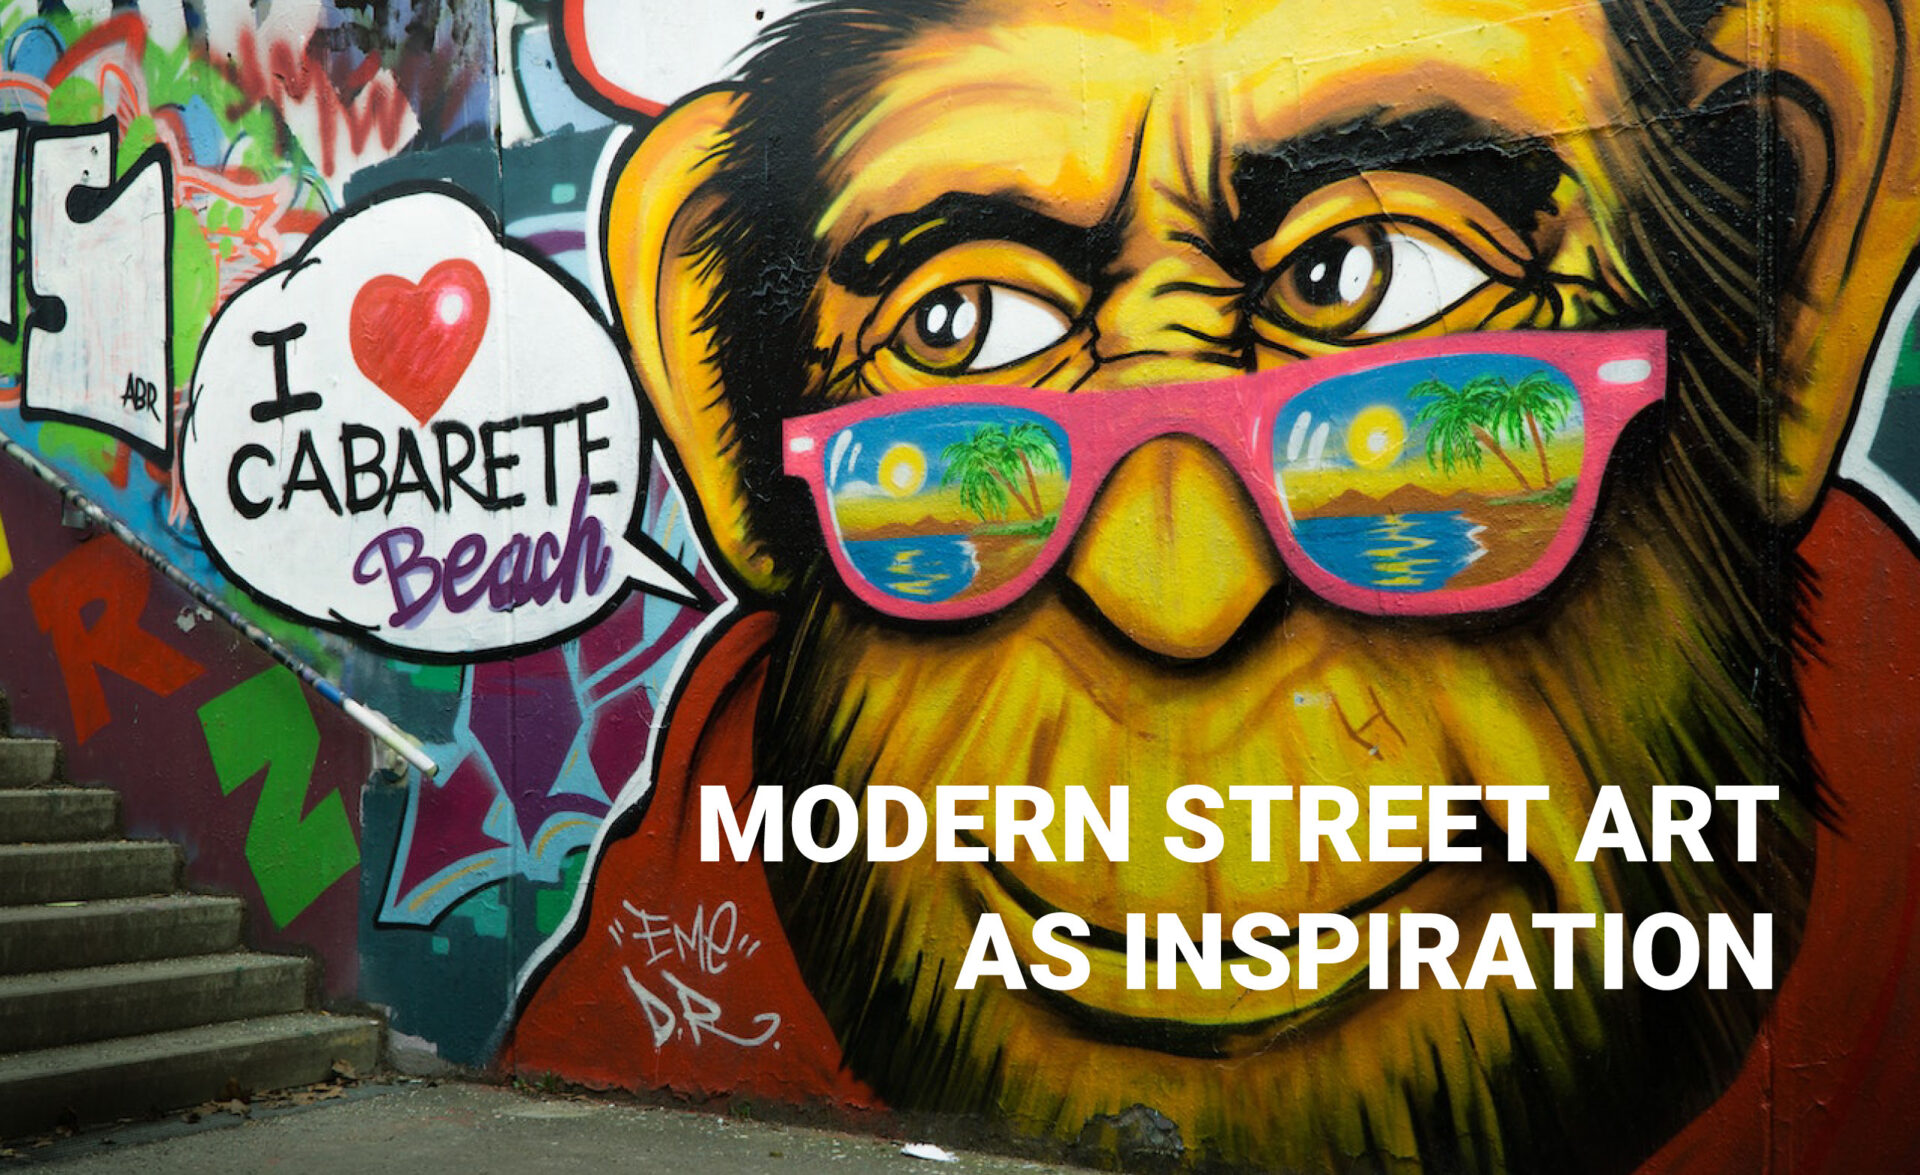 Modern street art is a source of inspiration.